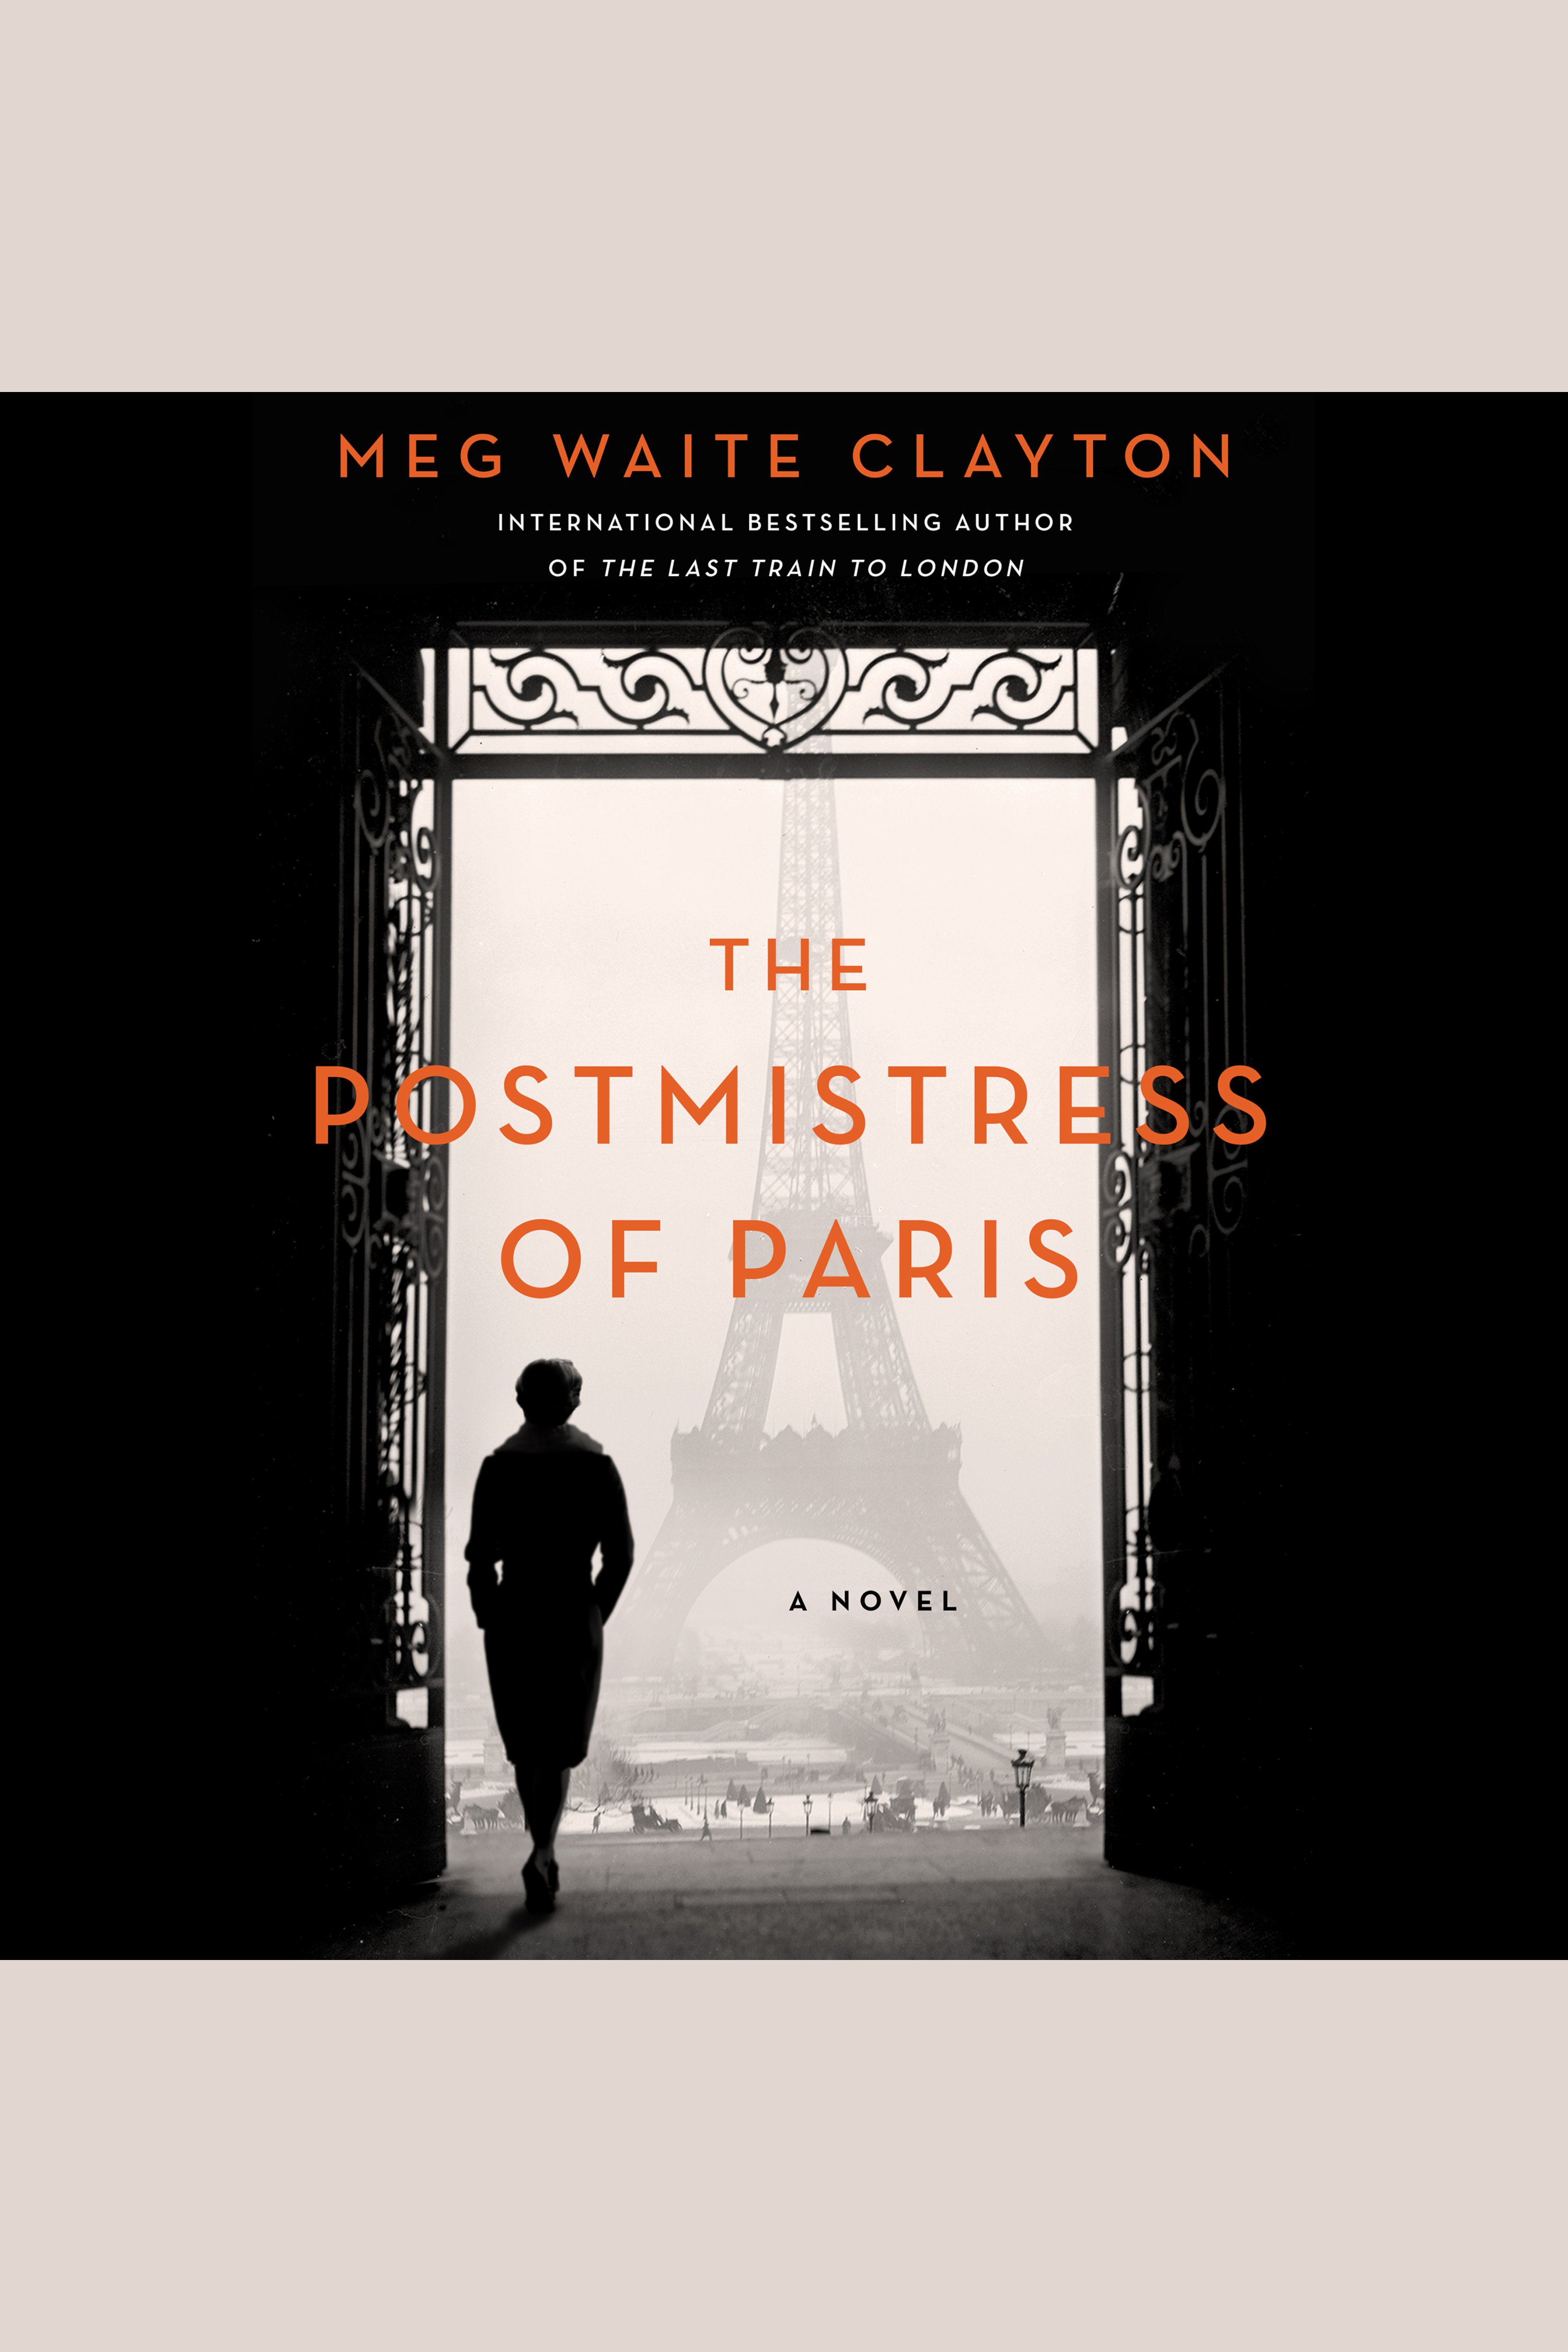 The Postmistress of Paris A Novel